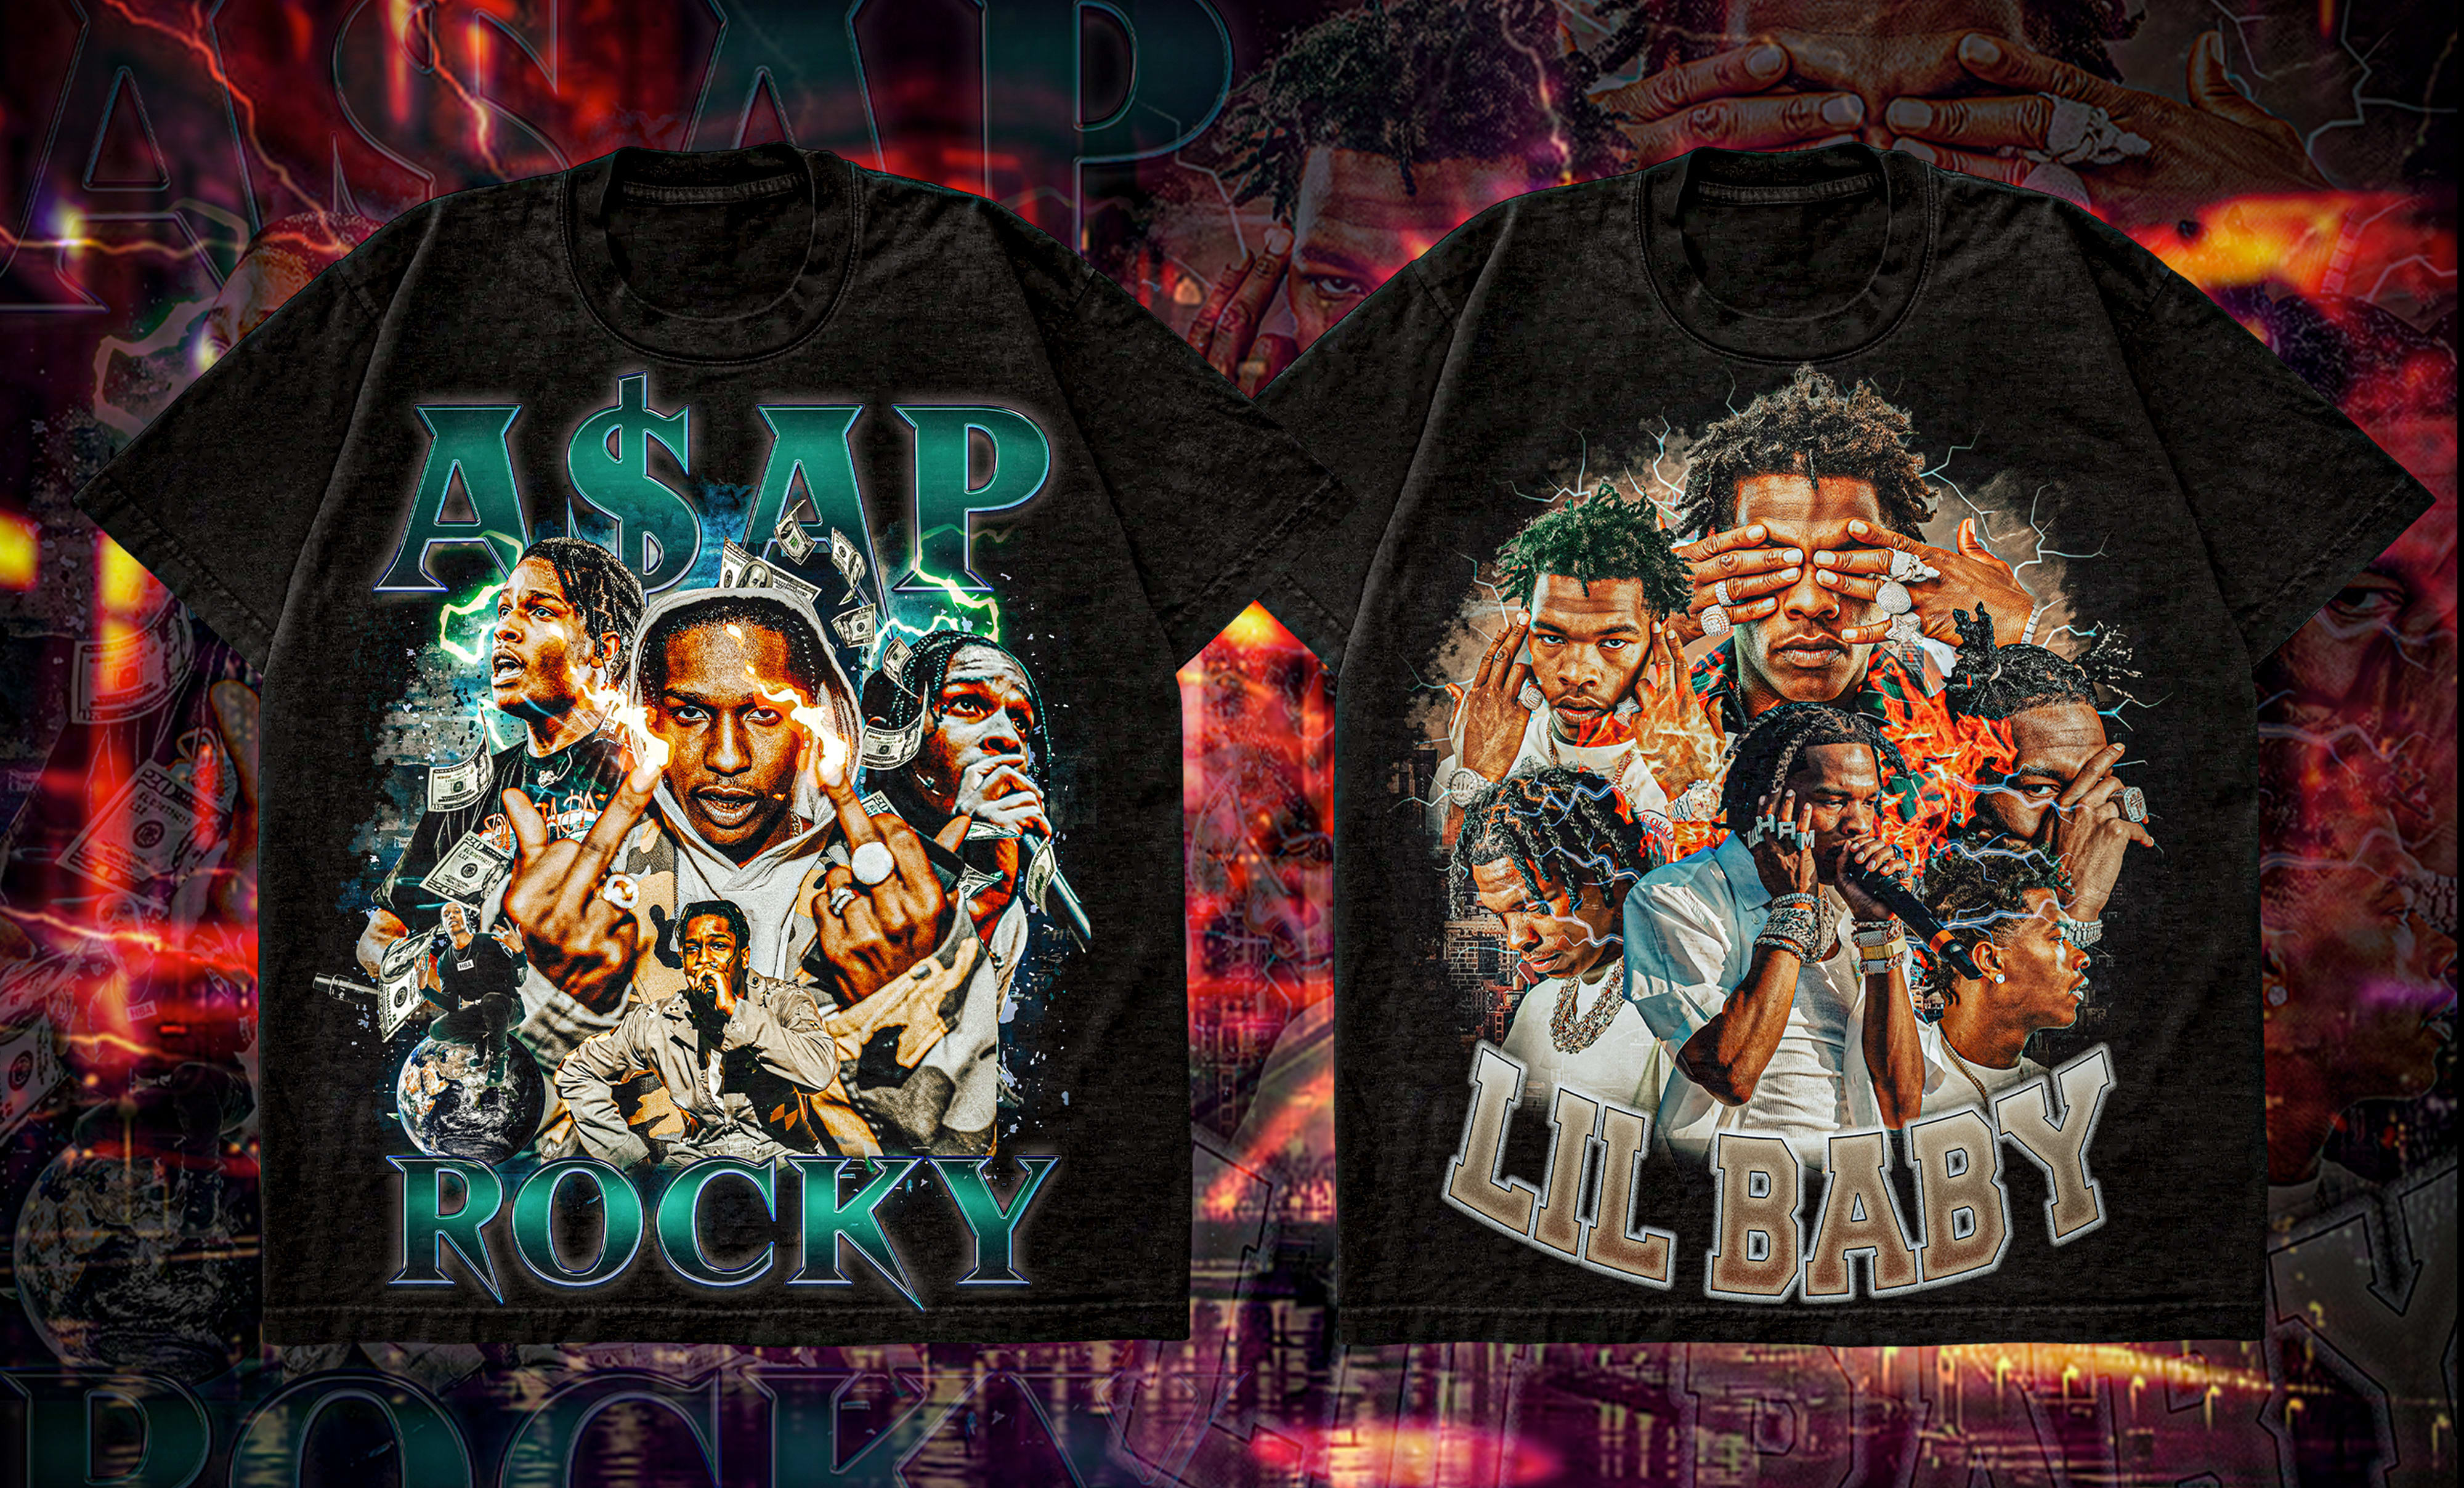 Crazy 90s vintage bootleg rap nba nfl sports t shirt design by Parvezchy